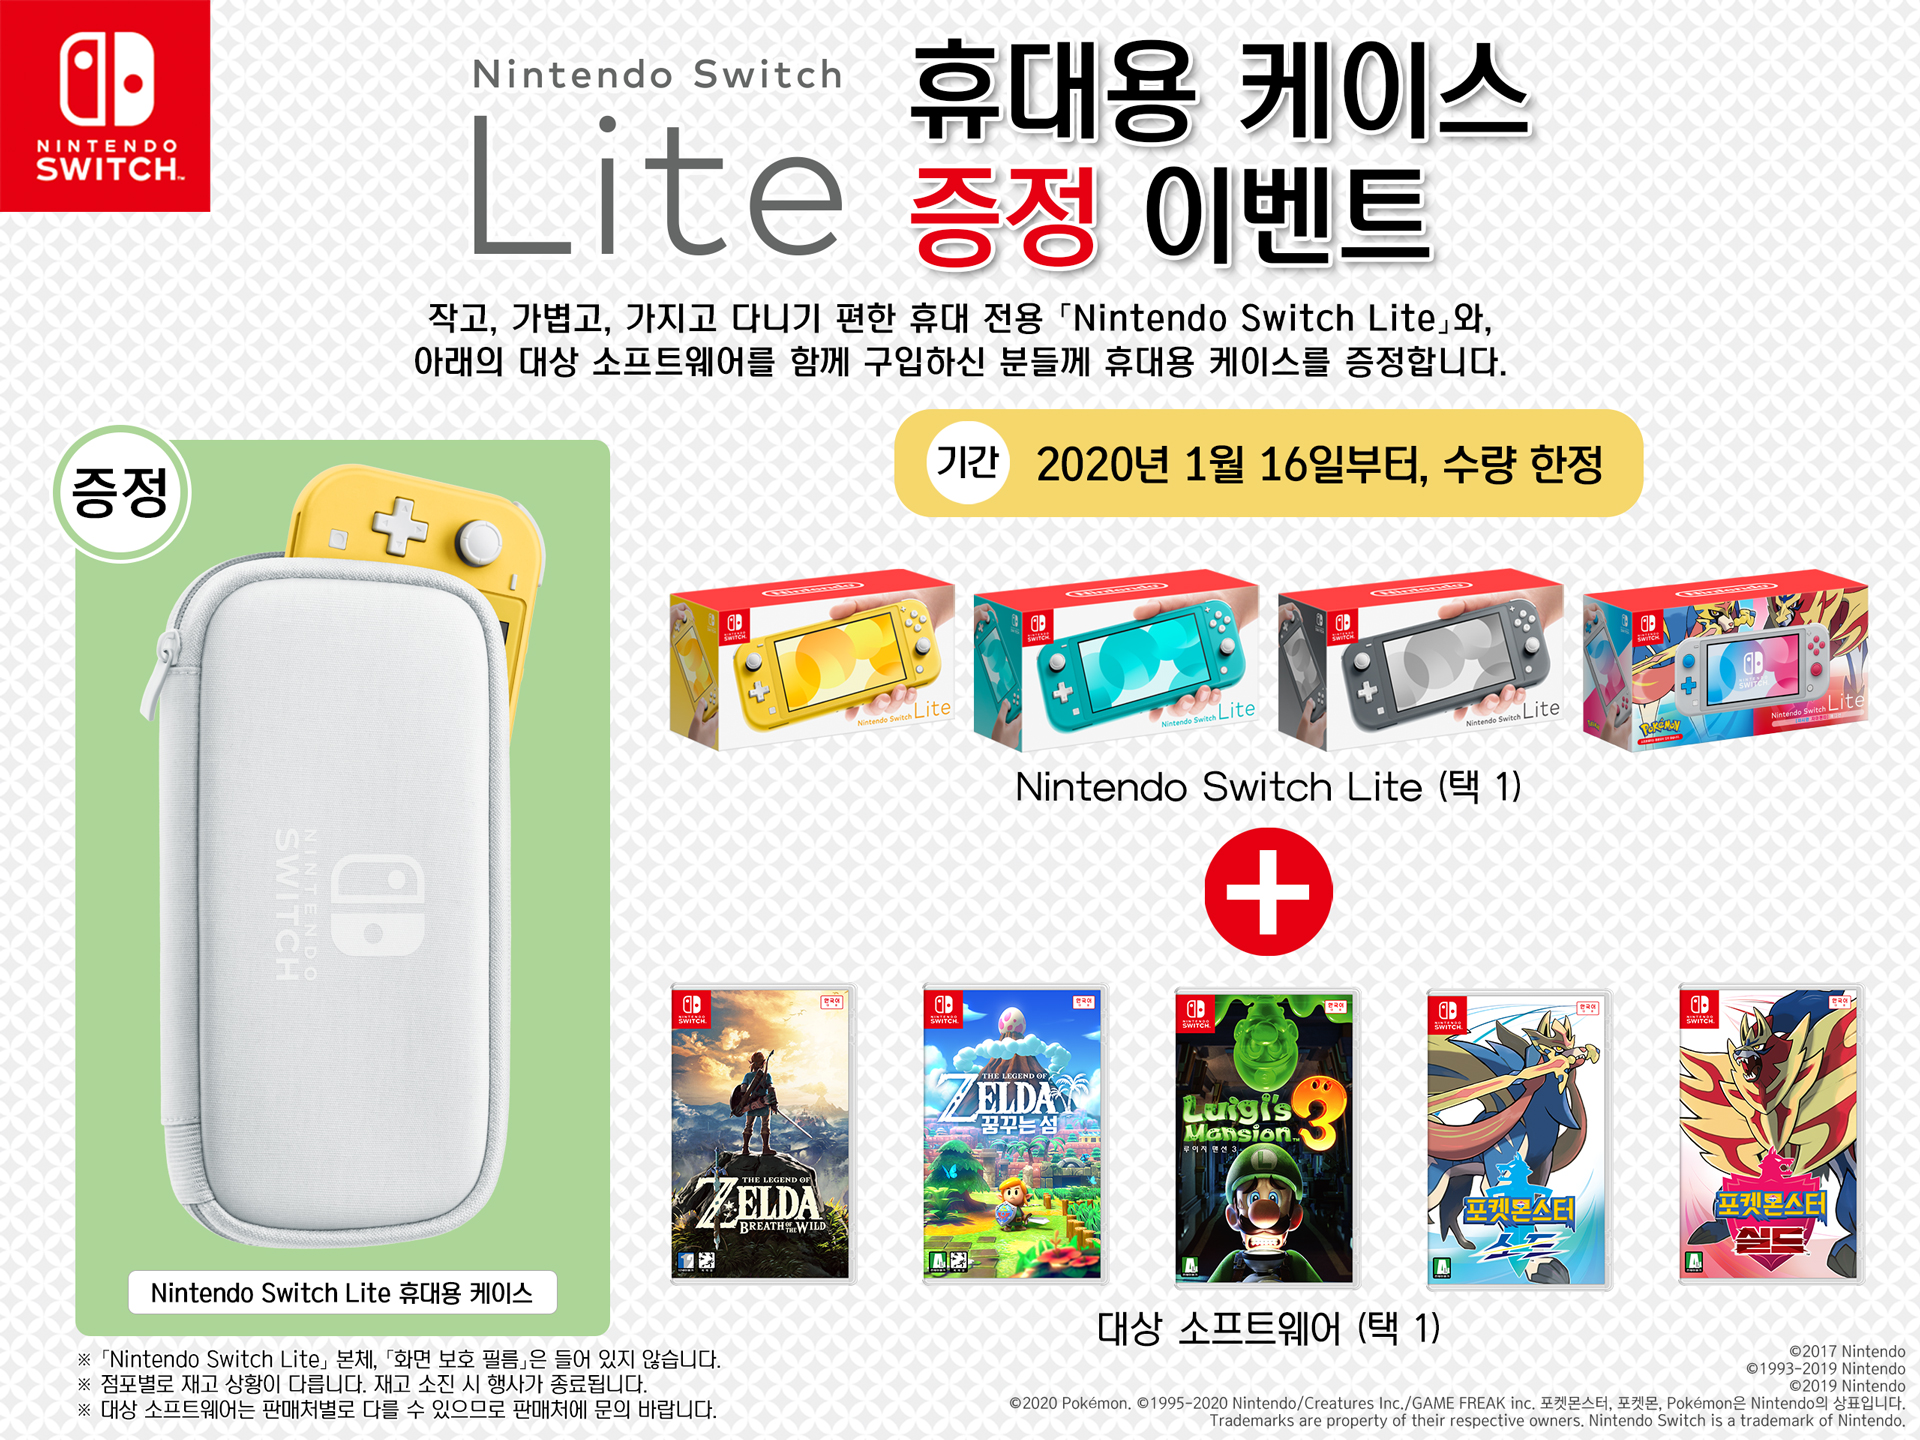 Switch Lite本体 と対象ソフトを一緒に購入した方に キャリングケース をプレゼントするキャンペーンが韓国で実施中 Nintendo Switch 情報ブログ